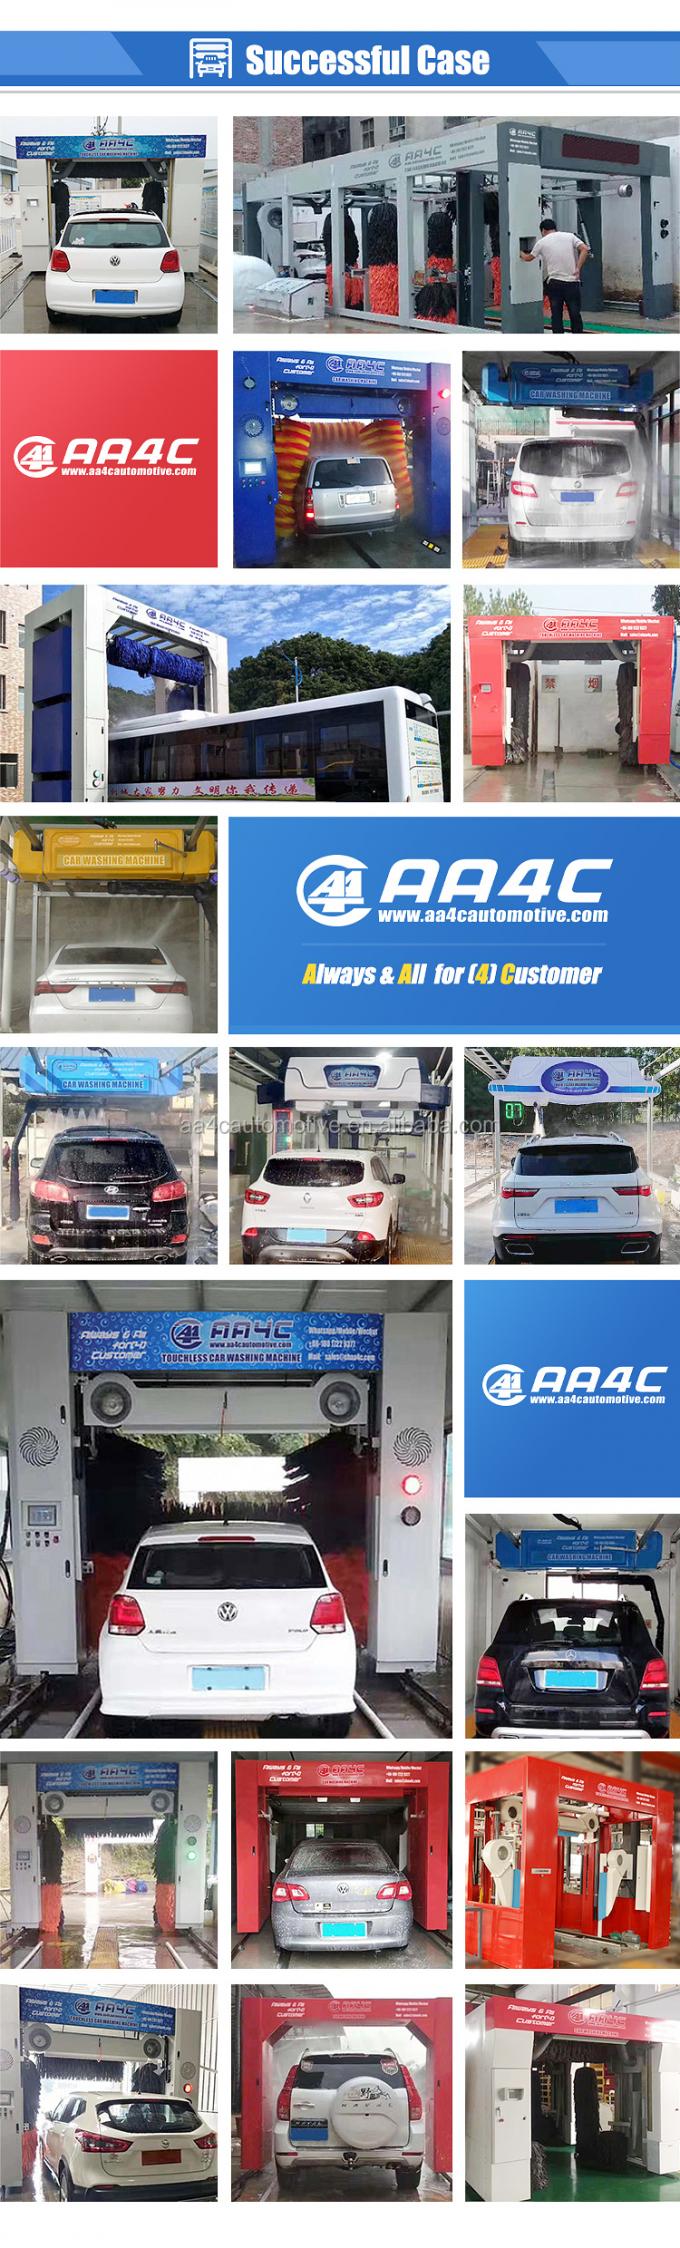 Der Autowaschmaschine 9 AA4C-Tunnels automatische Bürsten-Autowaschmaschine